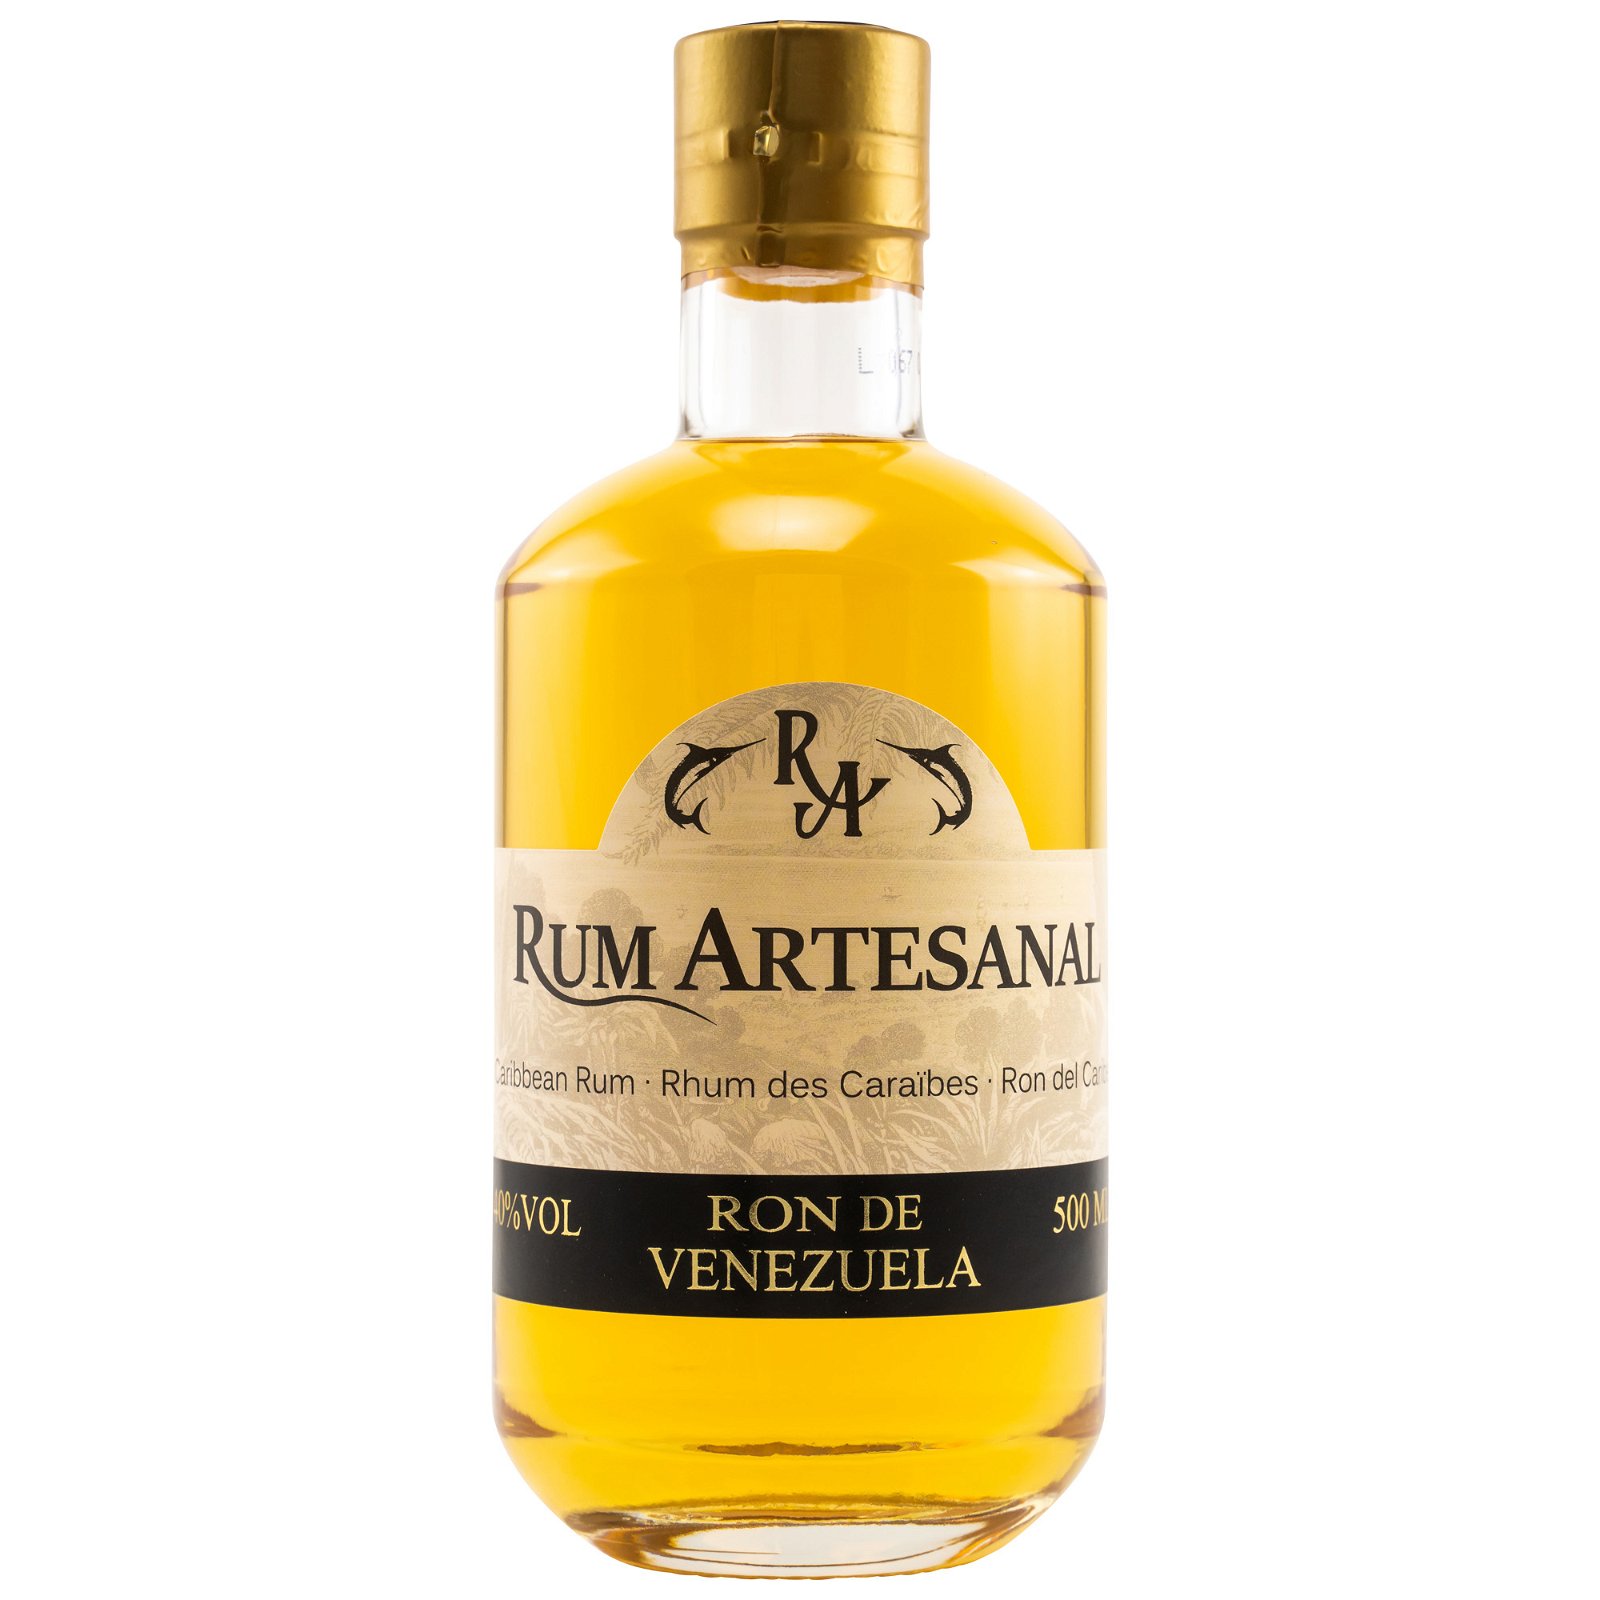 Ron de Venezuela 5 Jahre (Rum Artesanal)